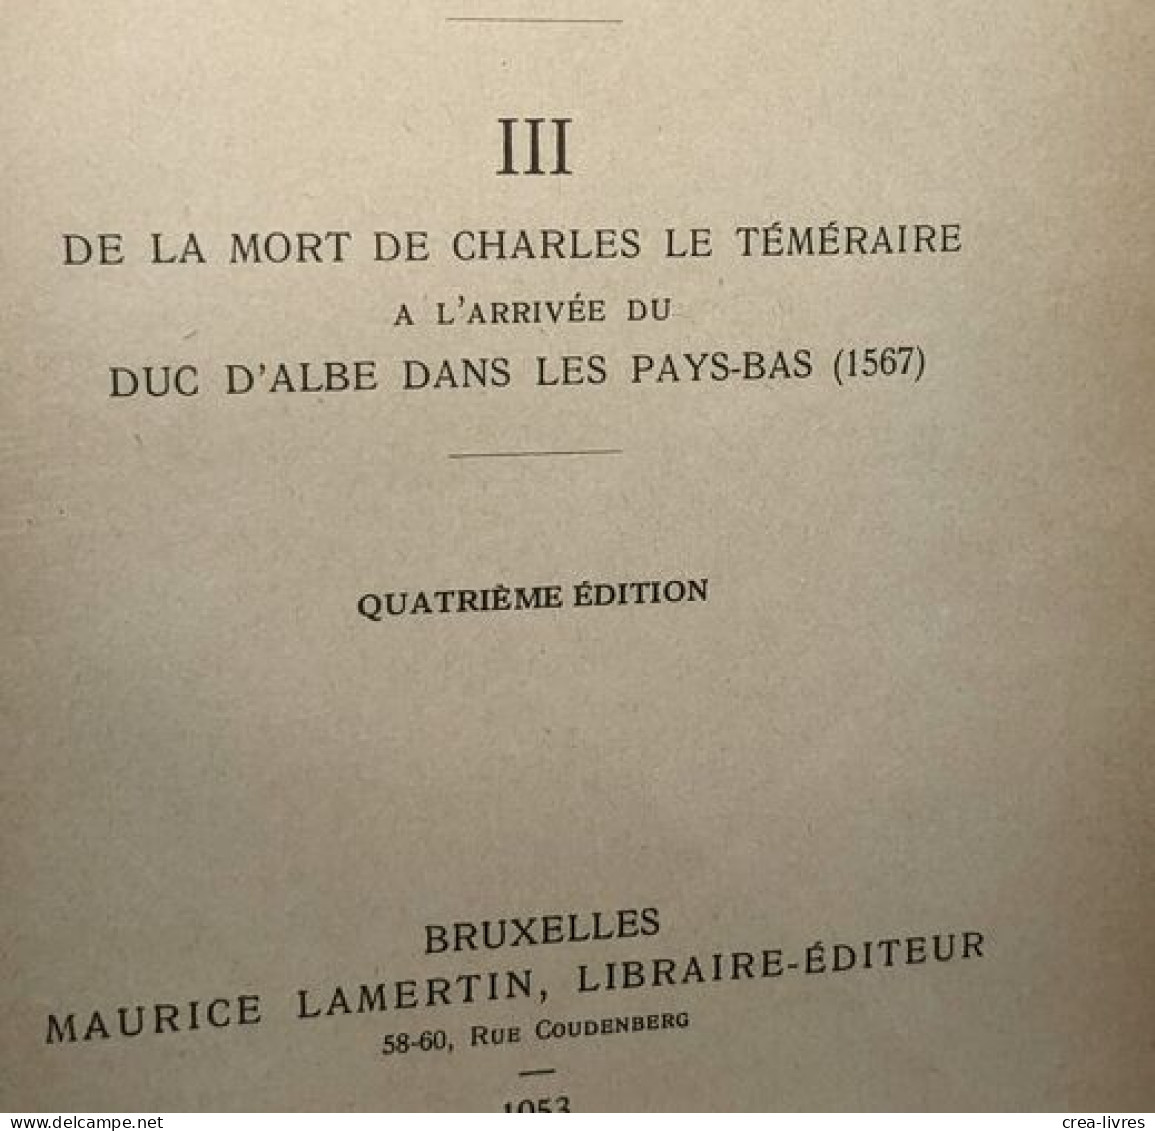 Histoire De La Belgique TOMES 1 (1929) 2 (1947) 3 (1953) 4 (1927) 5 (1921) Et 7 (1948) (tome 6 Manquant) - - Geschiedenis